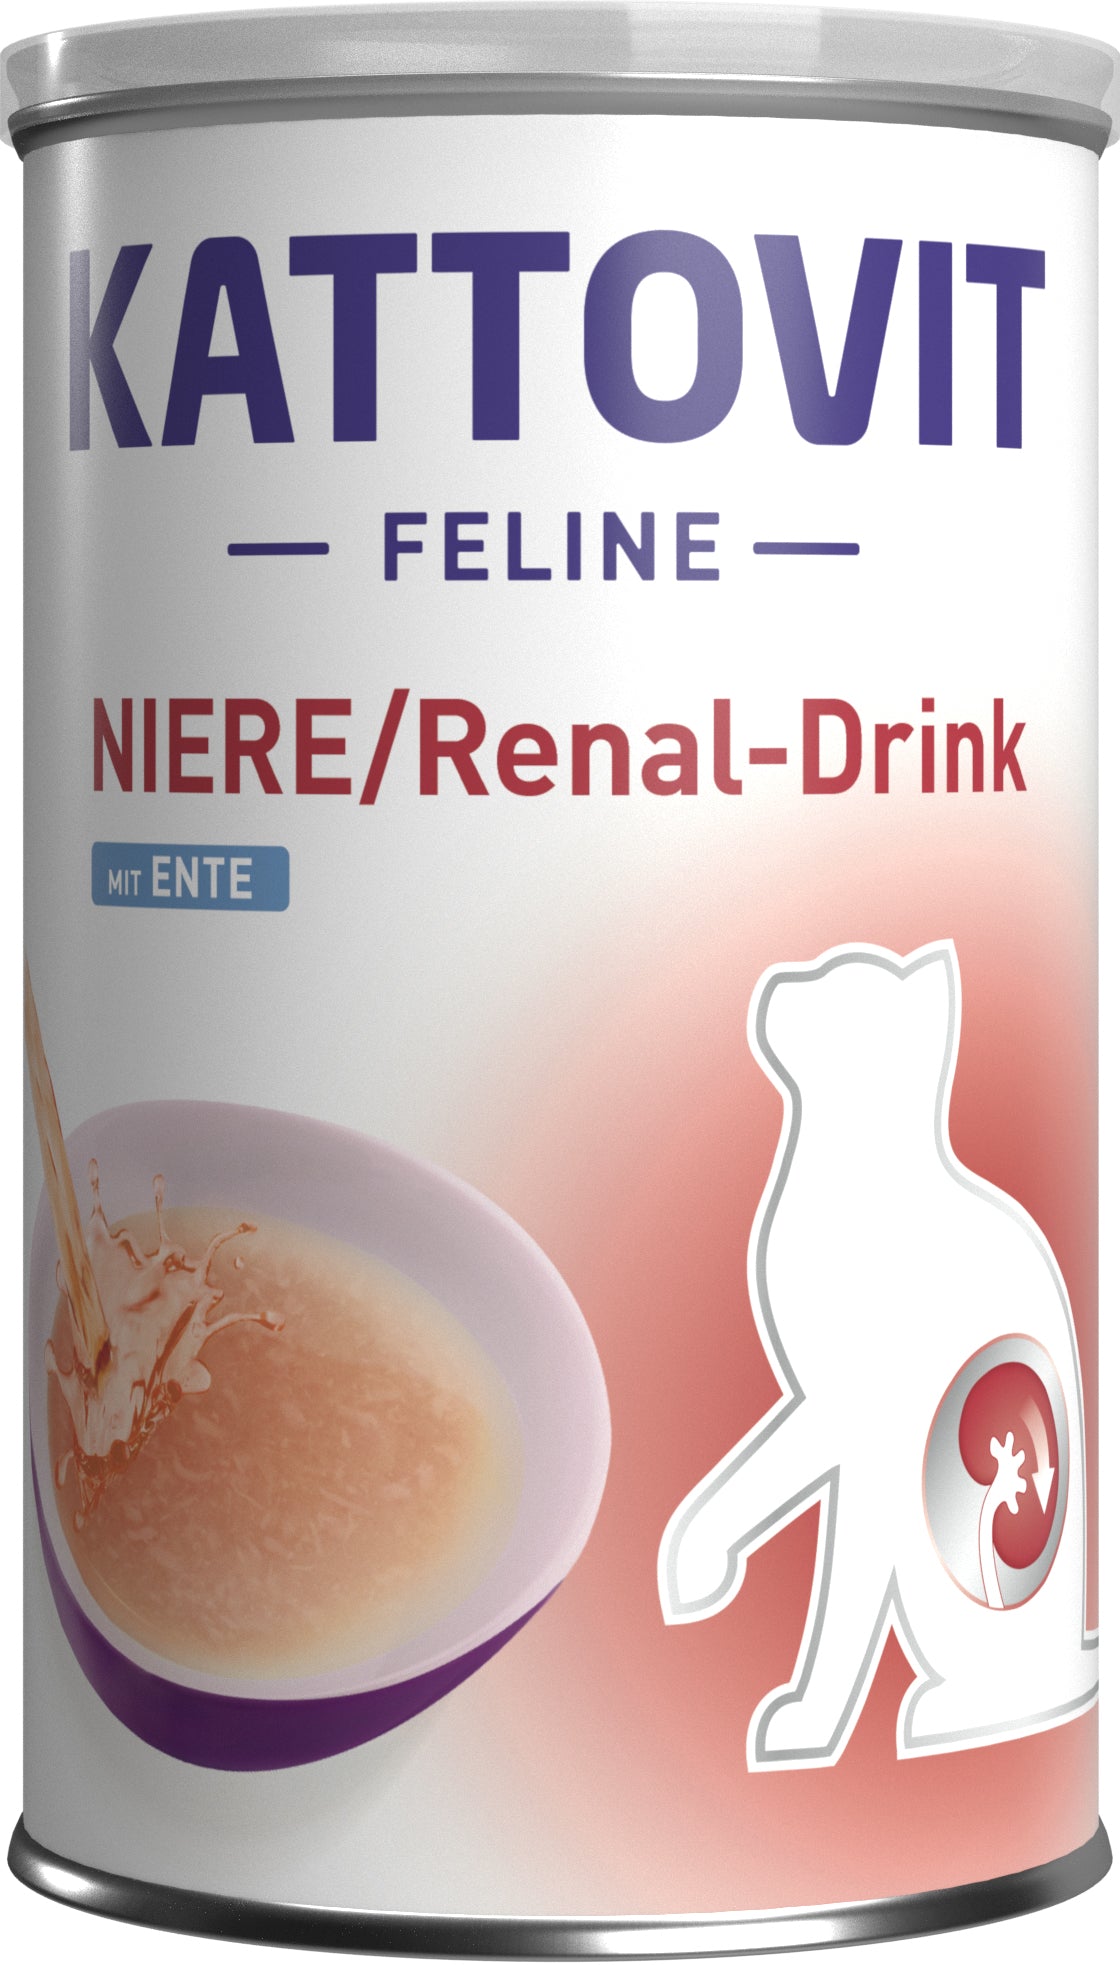 Kattovit Niere/Renal-Drink - zoo.de